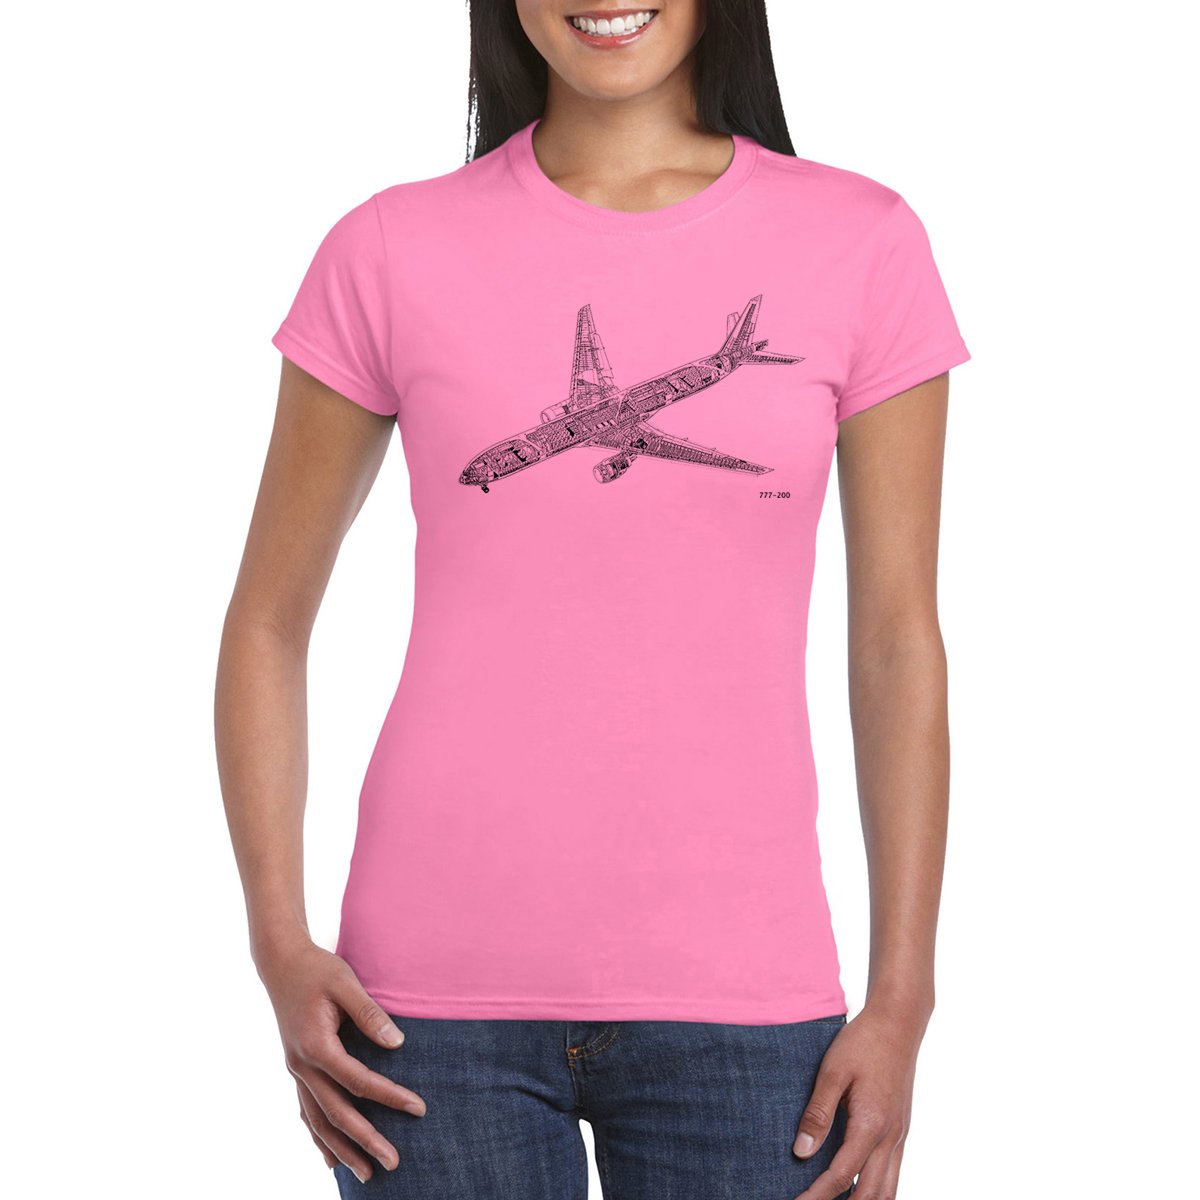 B 777 CUTAWAY DIAGRAM Women's T-Shirt